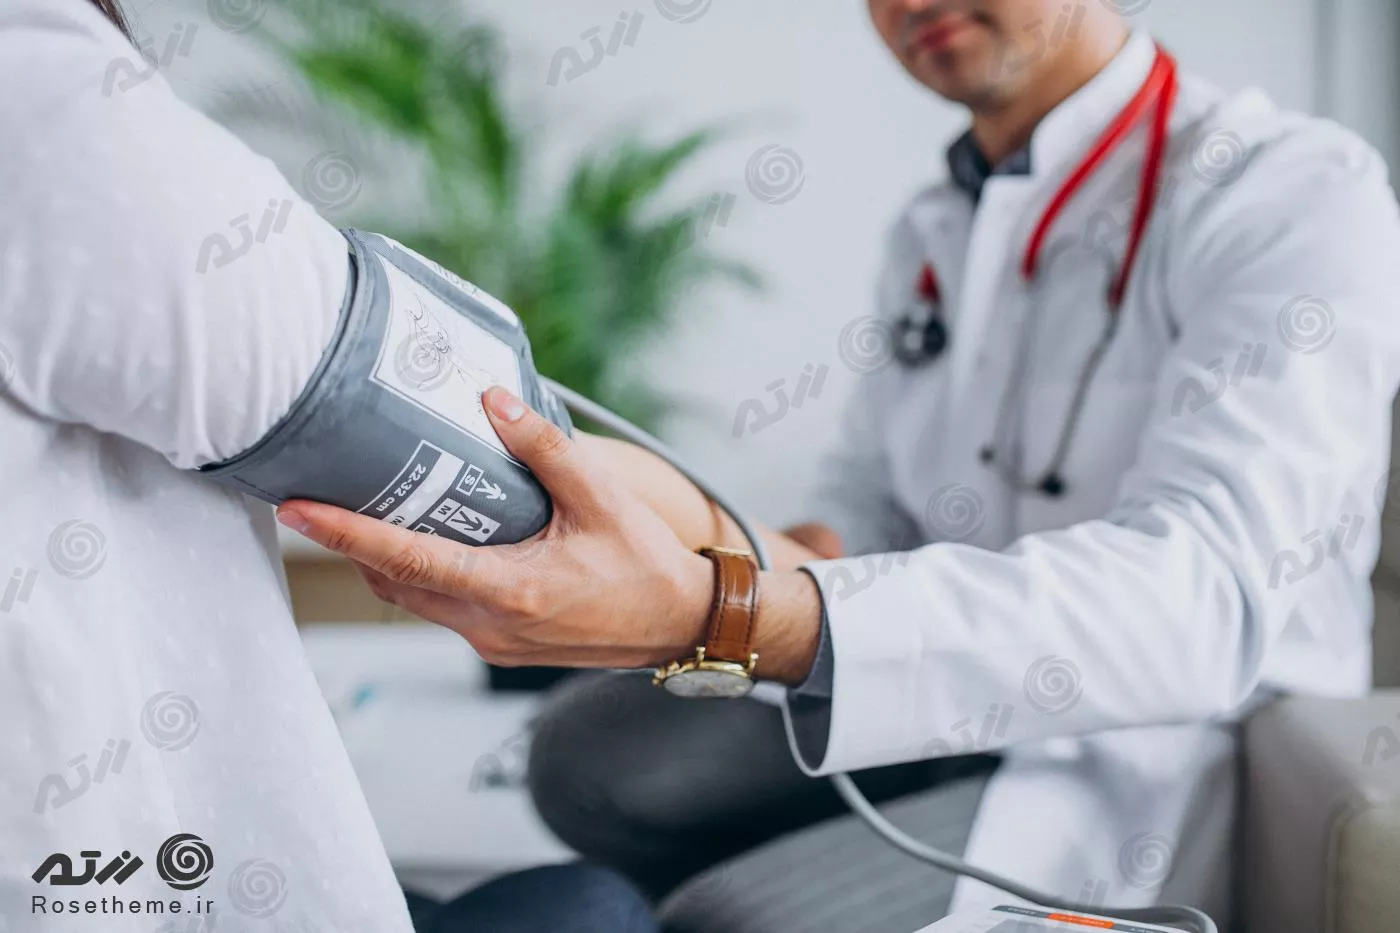 عکس پزشک مرد جوان با بیمار در حال اندازه گیری فشار خون 24326